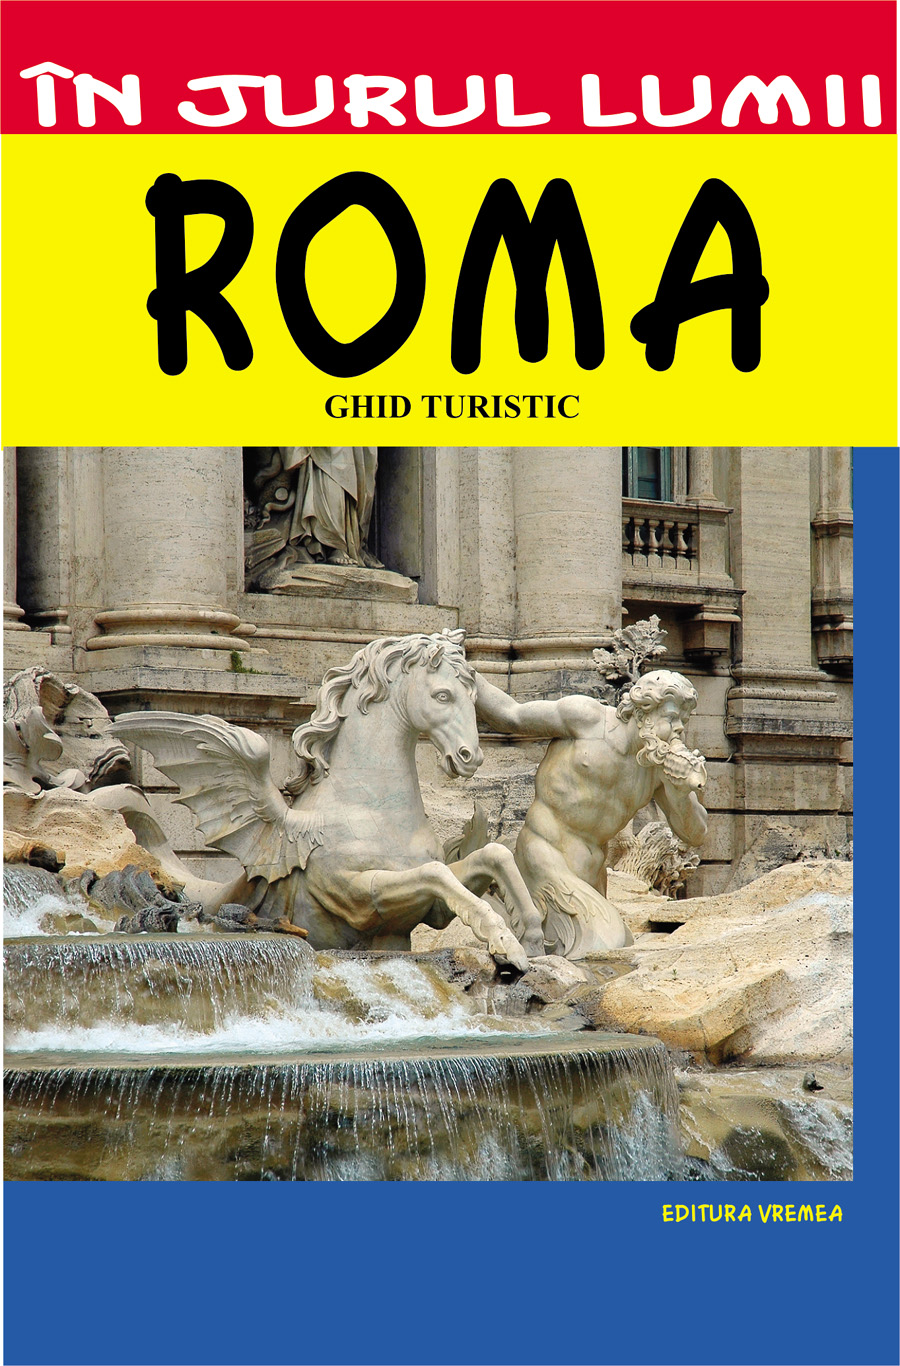 In jurul lumii - Roma - Ghid turistic